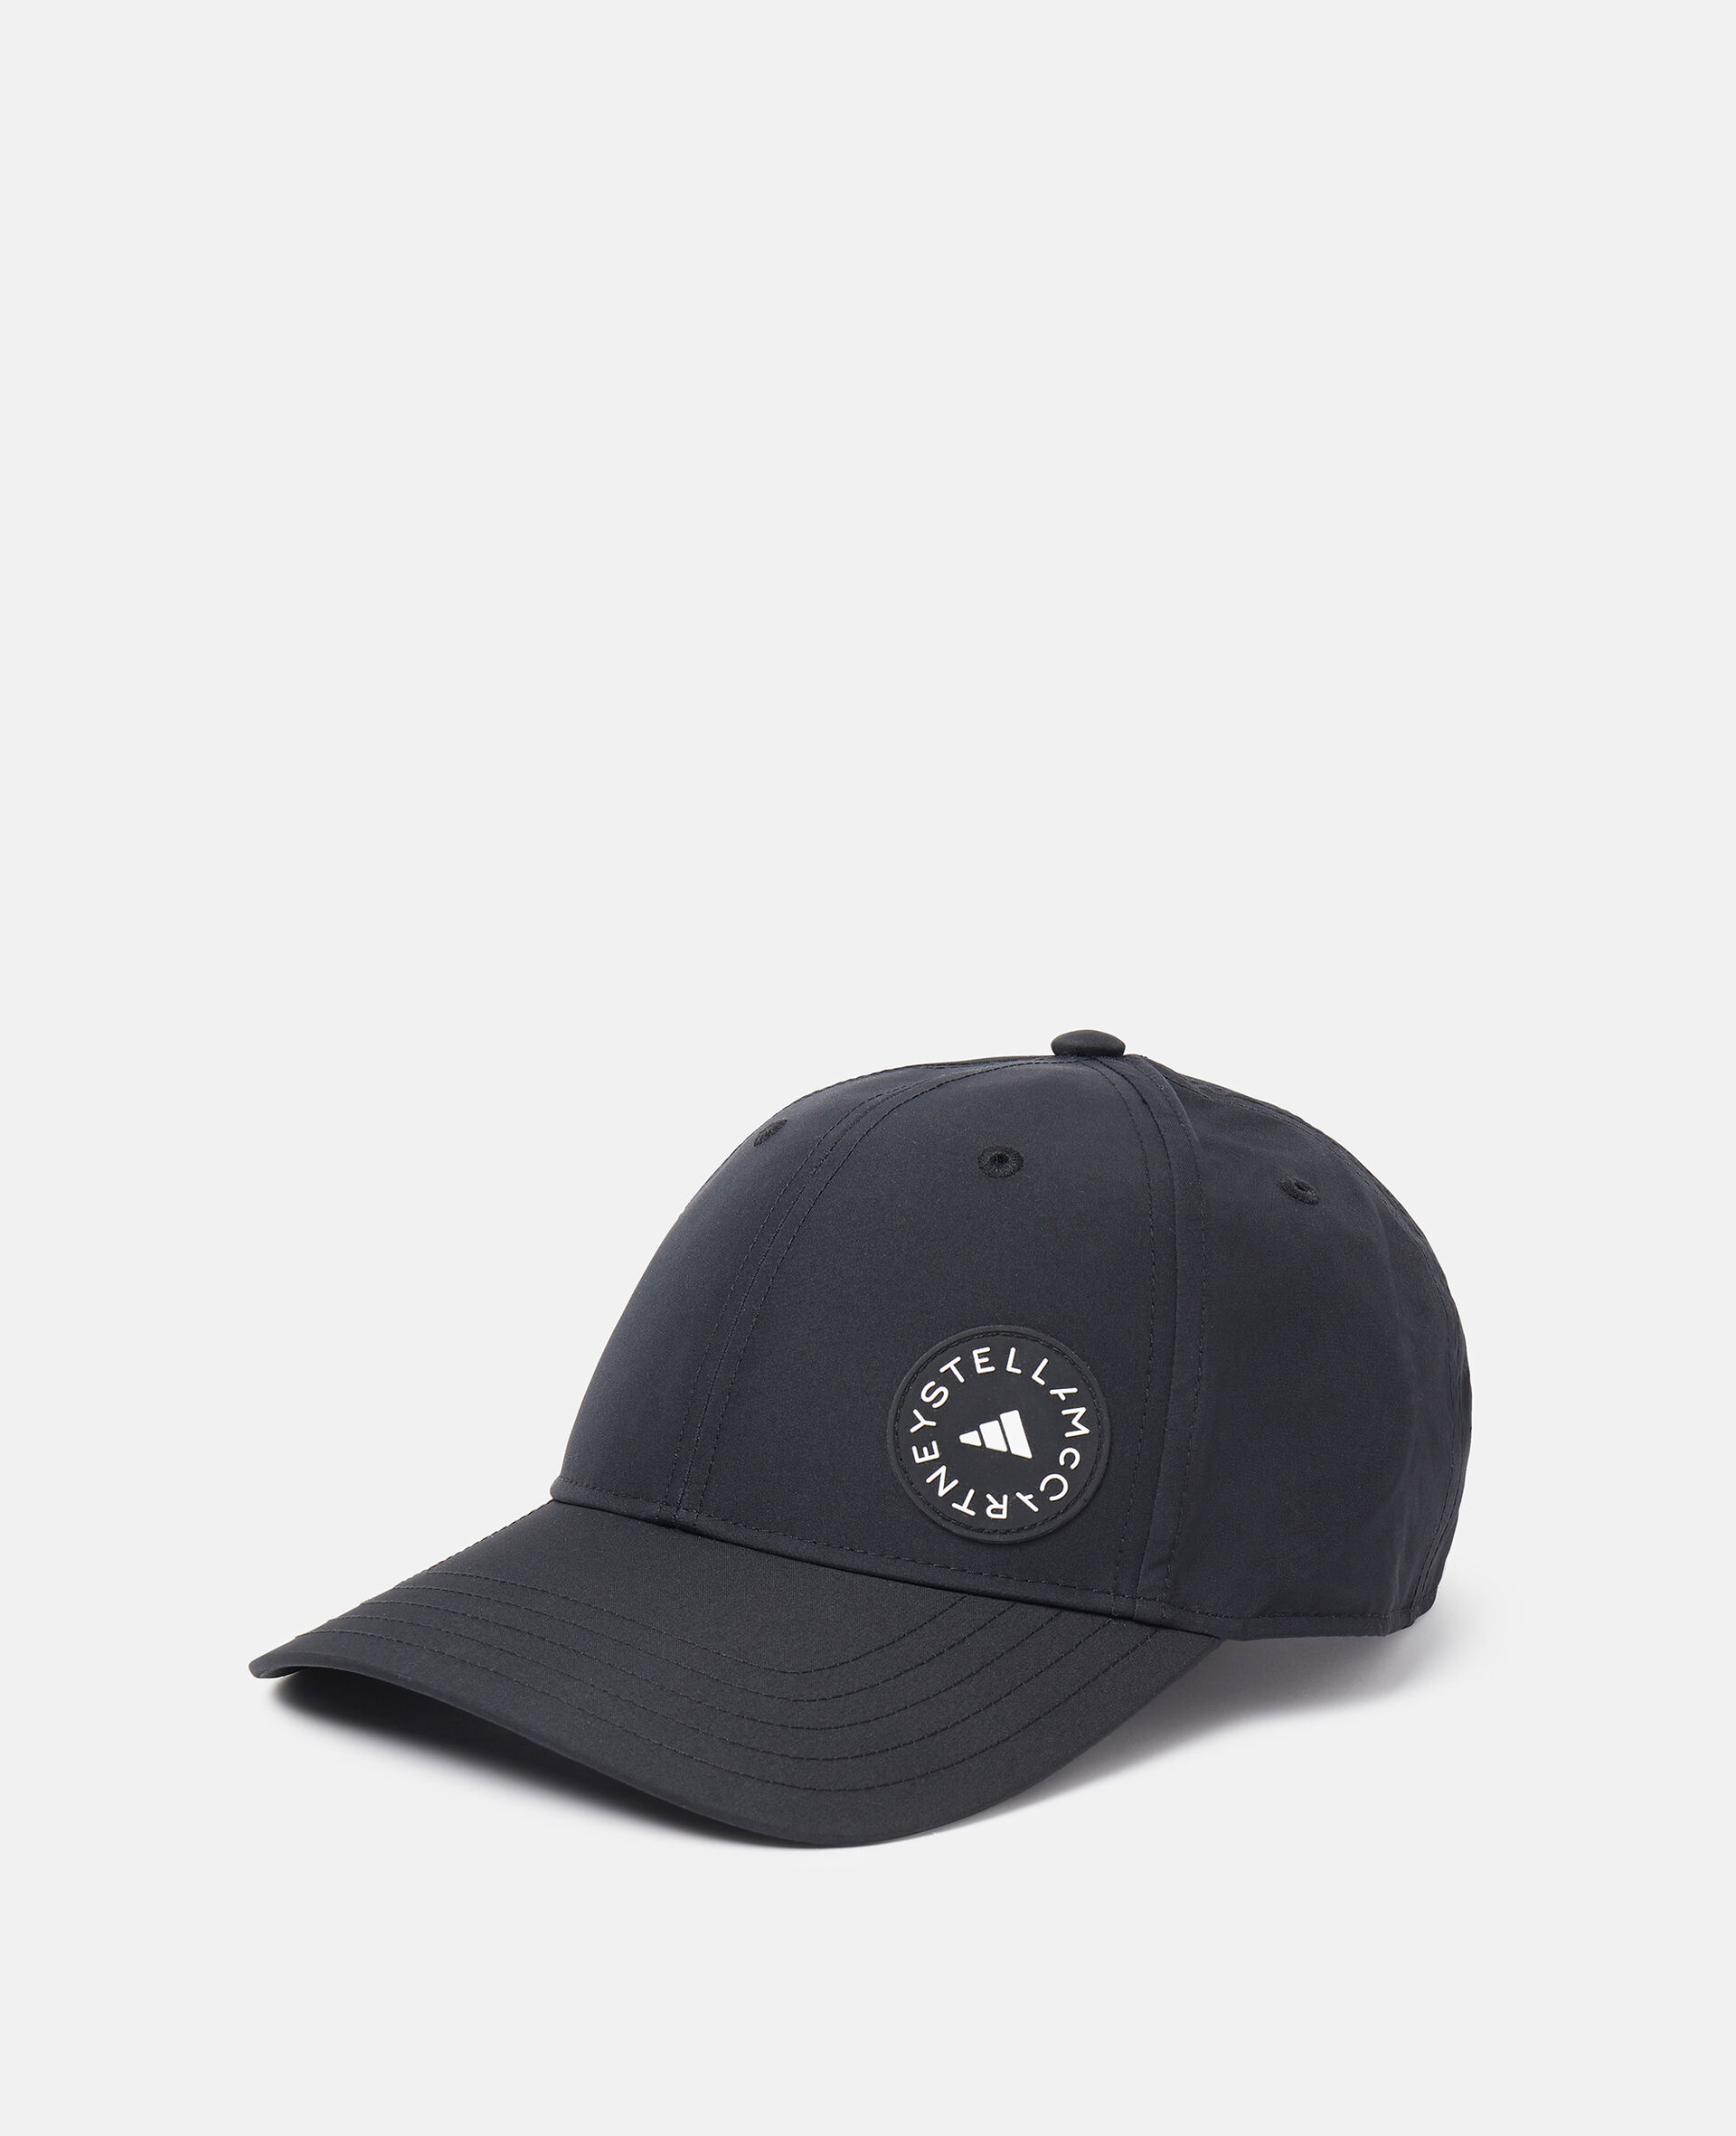 Baseball Cap-Black-medium